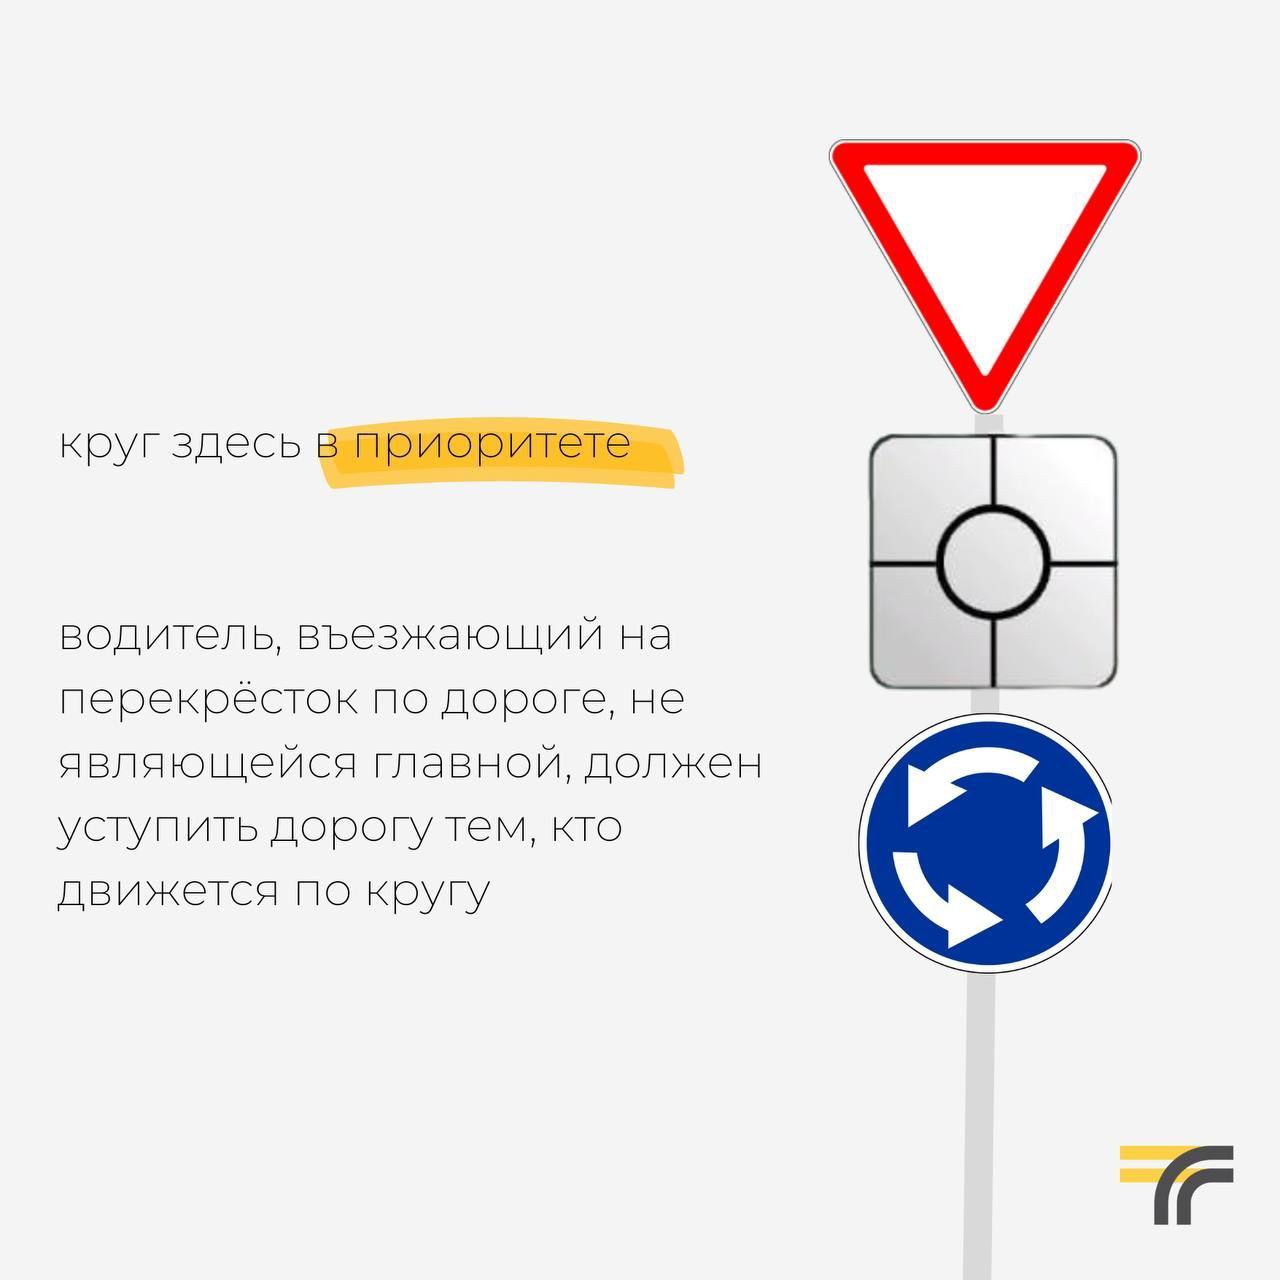 С 1 марта начнут действовать новые правила проезда по круговым перекрёсткам